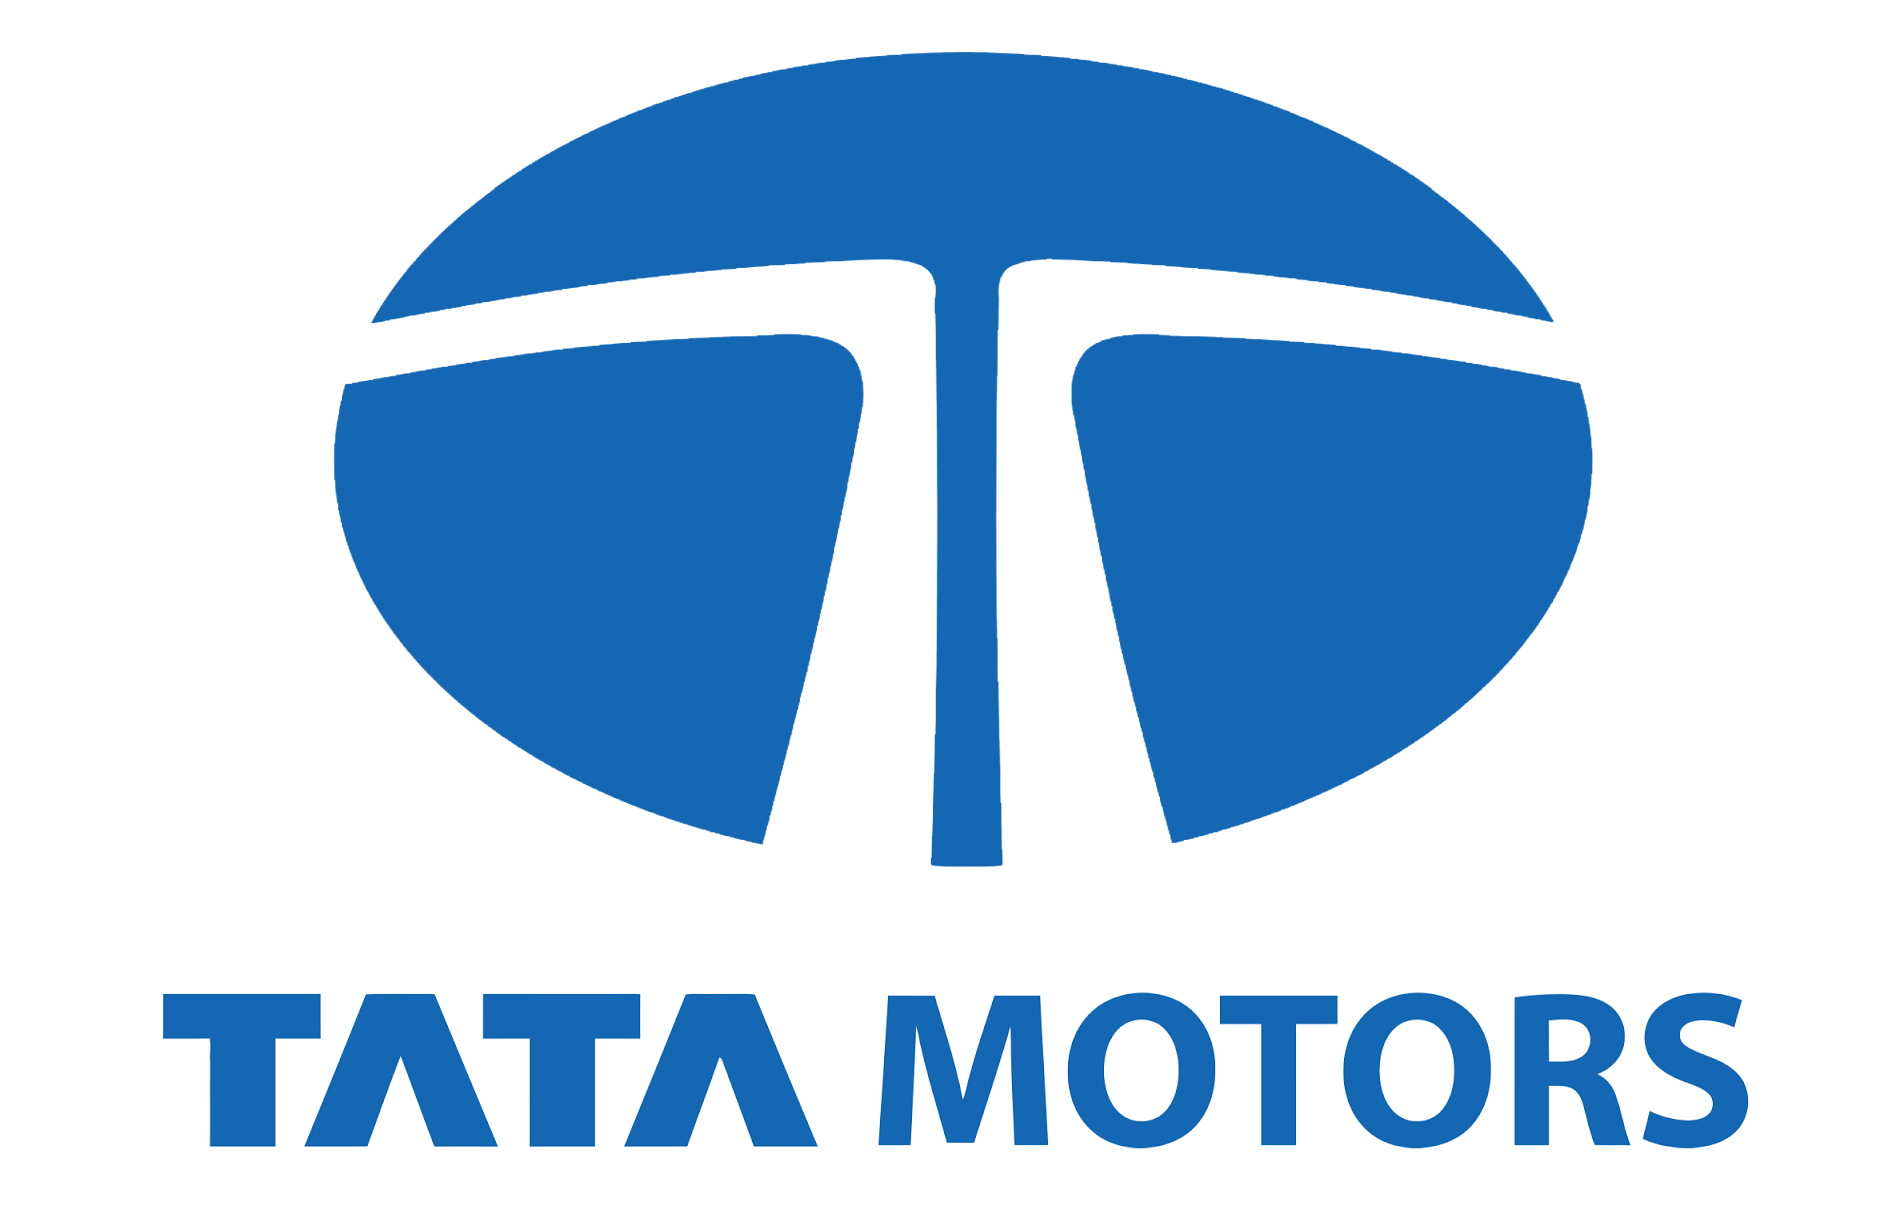 Tata Motors Cars Showroom - Nibir Motors|Show Room|Automotive